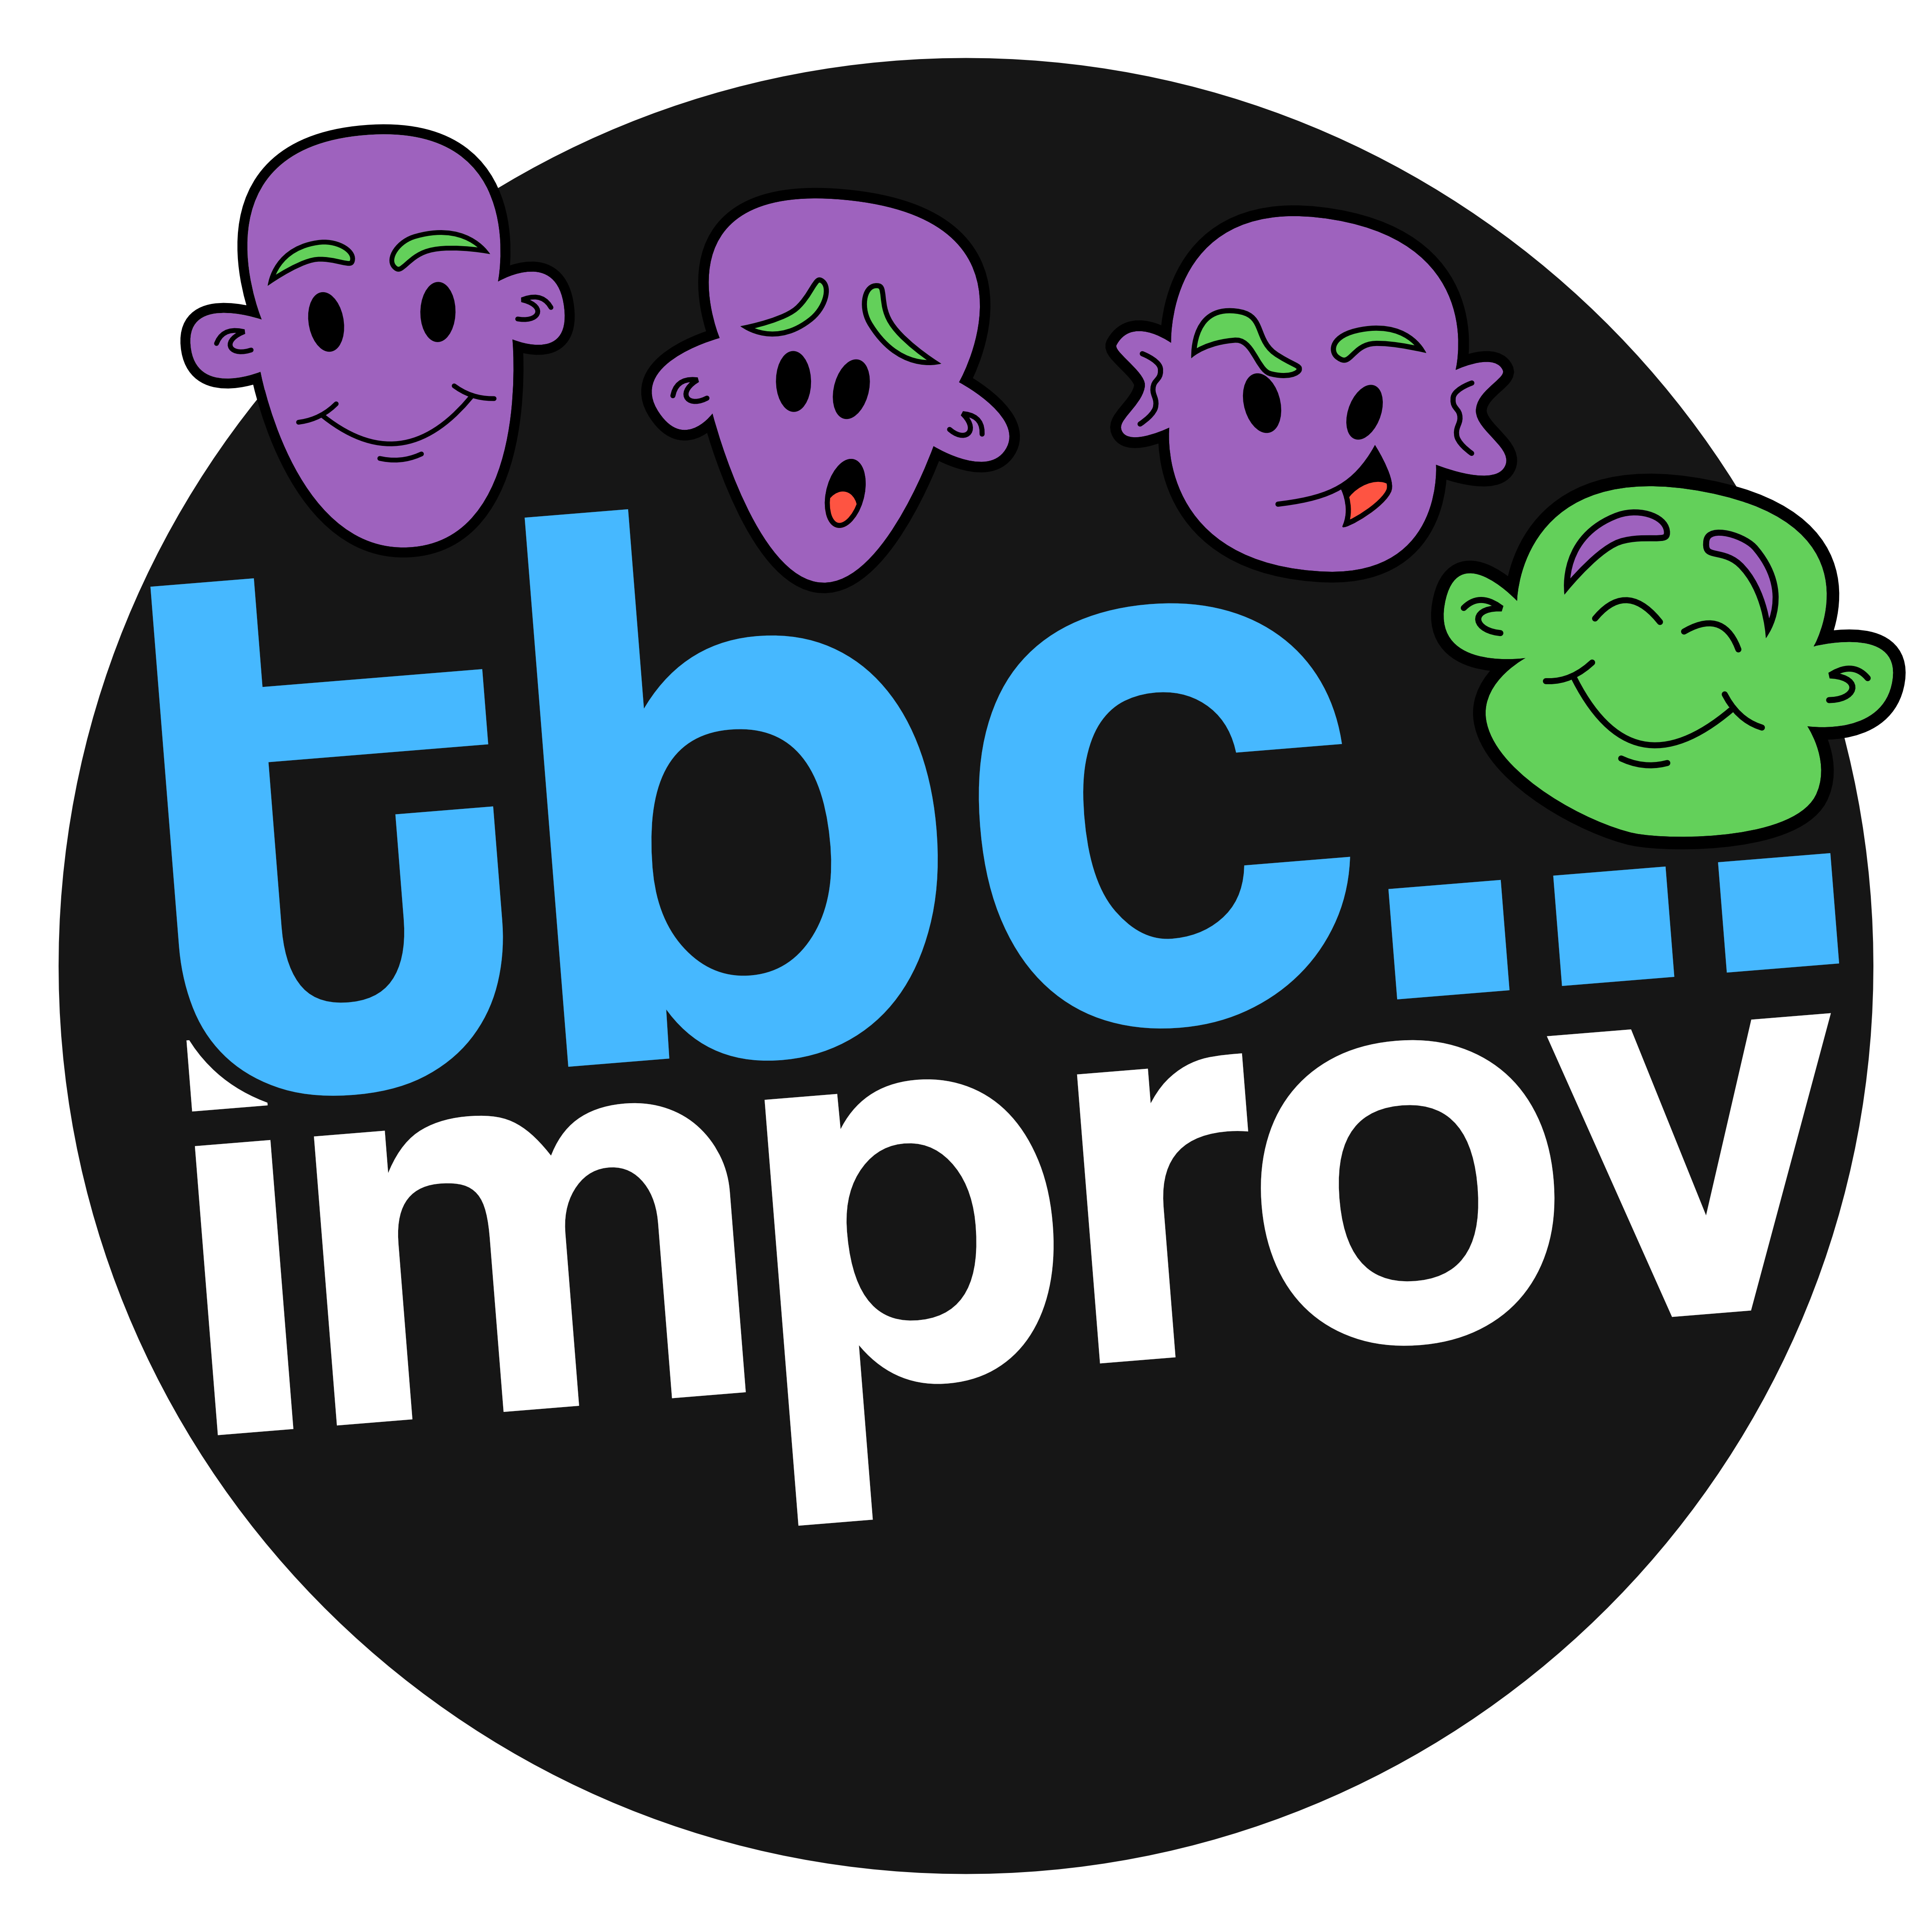 TBC Logo